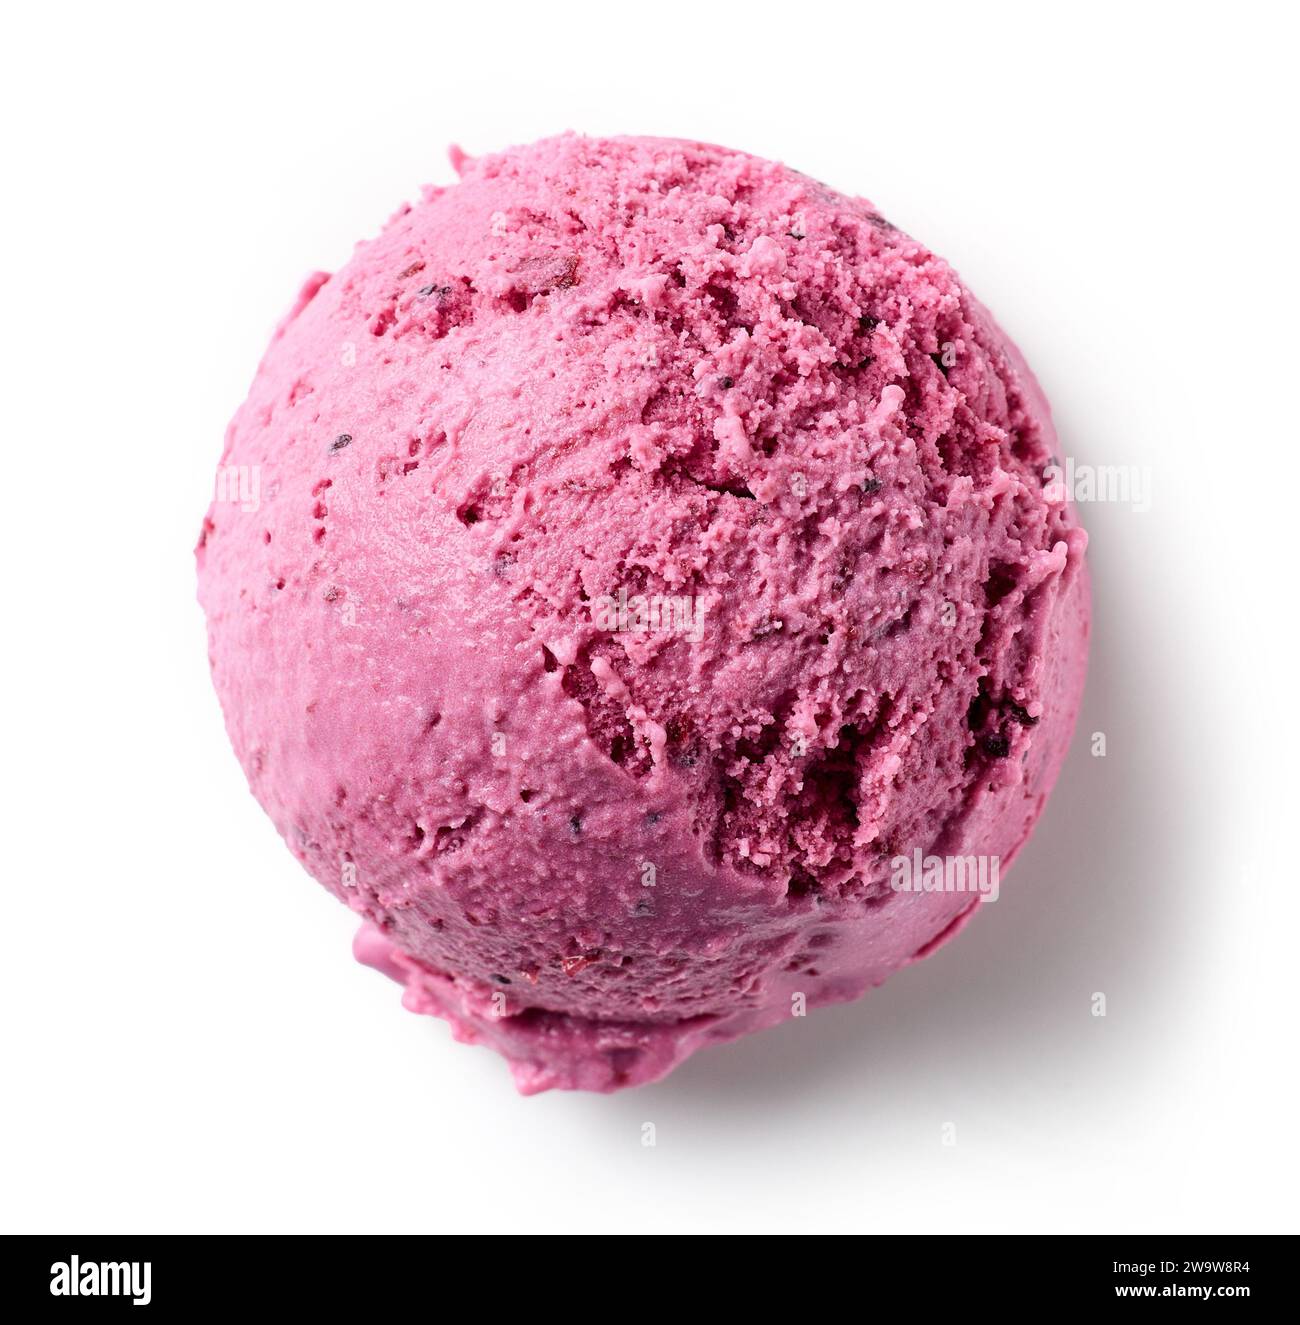 boule de crème glacée rose isolée sur fond blanc, vue de dessus Banque D'Images